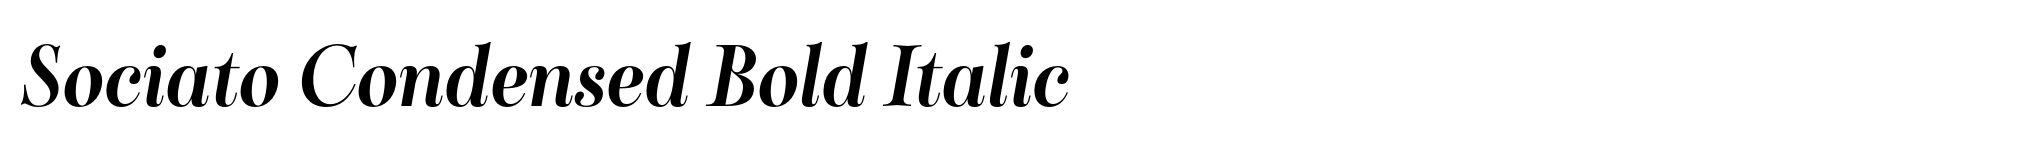 Sociato Condensed Bold Italic image